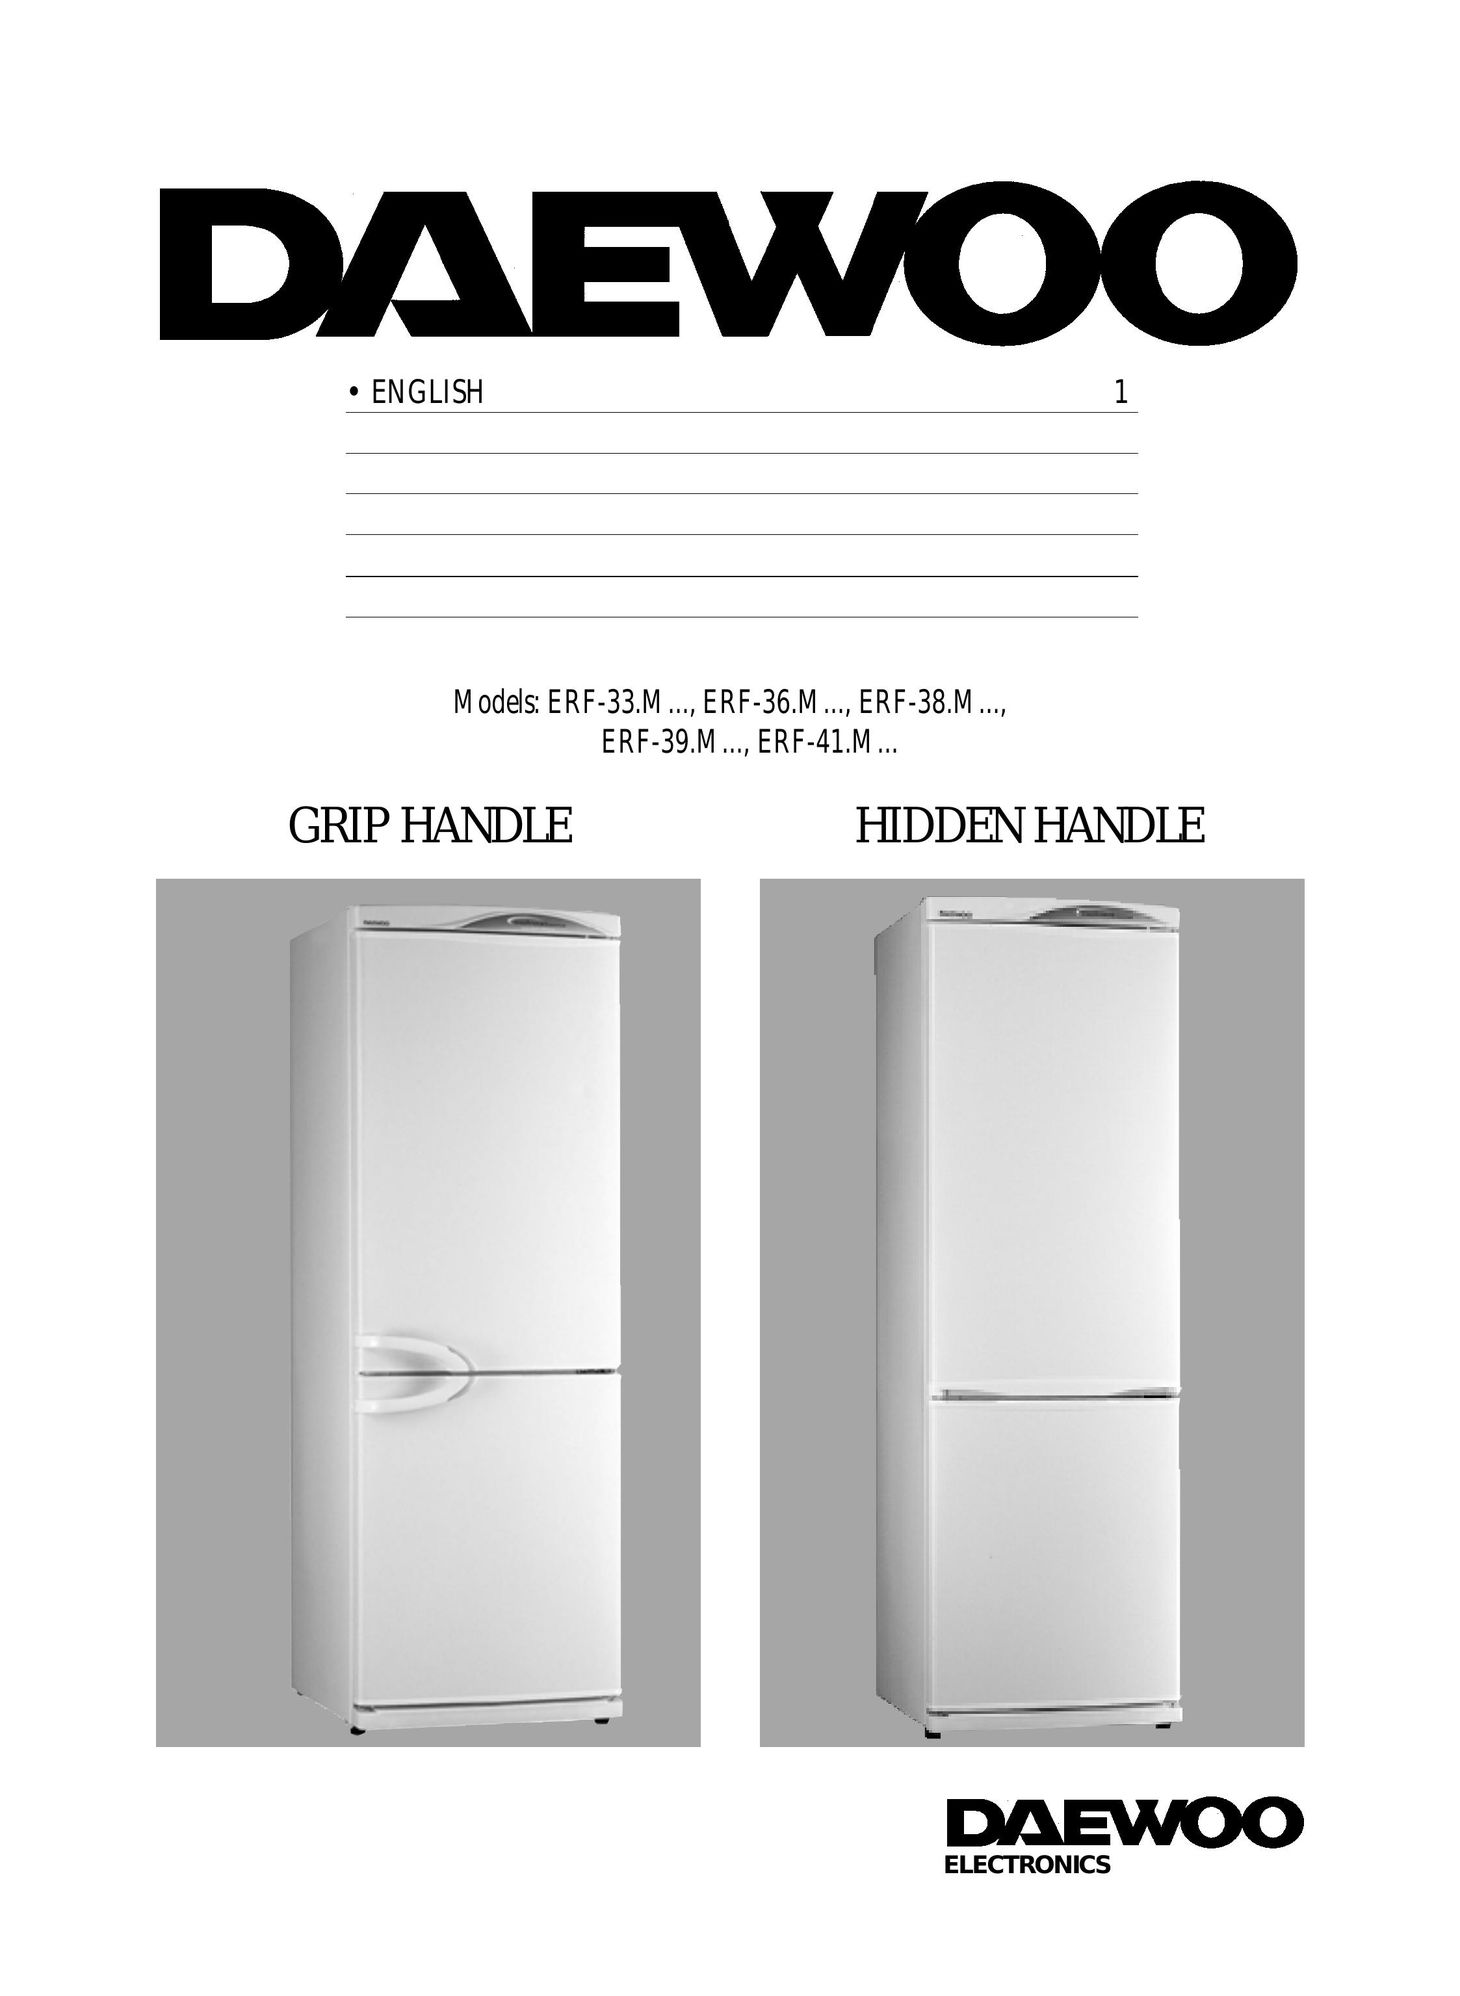 Daewoo ERF-39.M Freezer User Manual